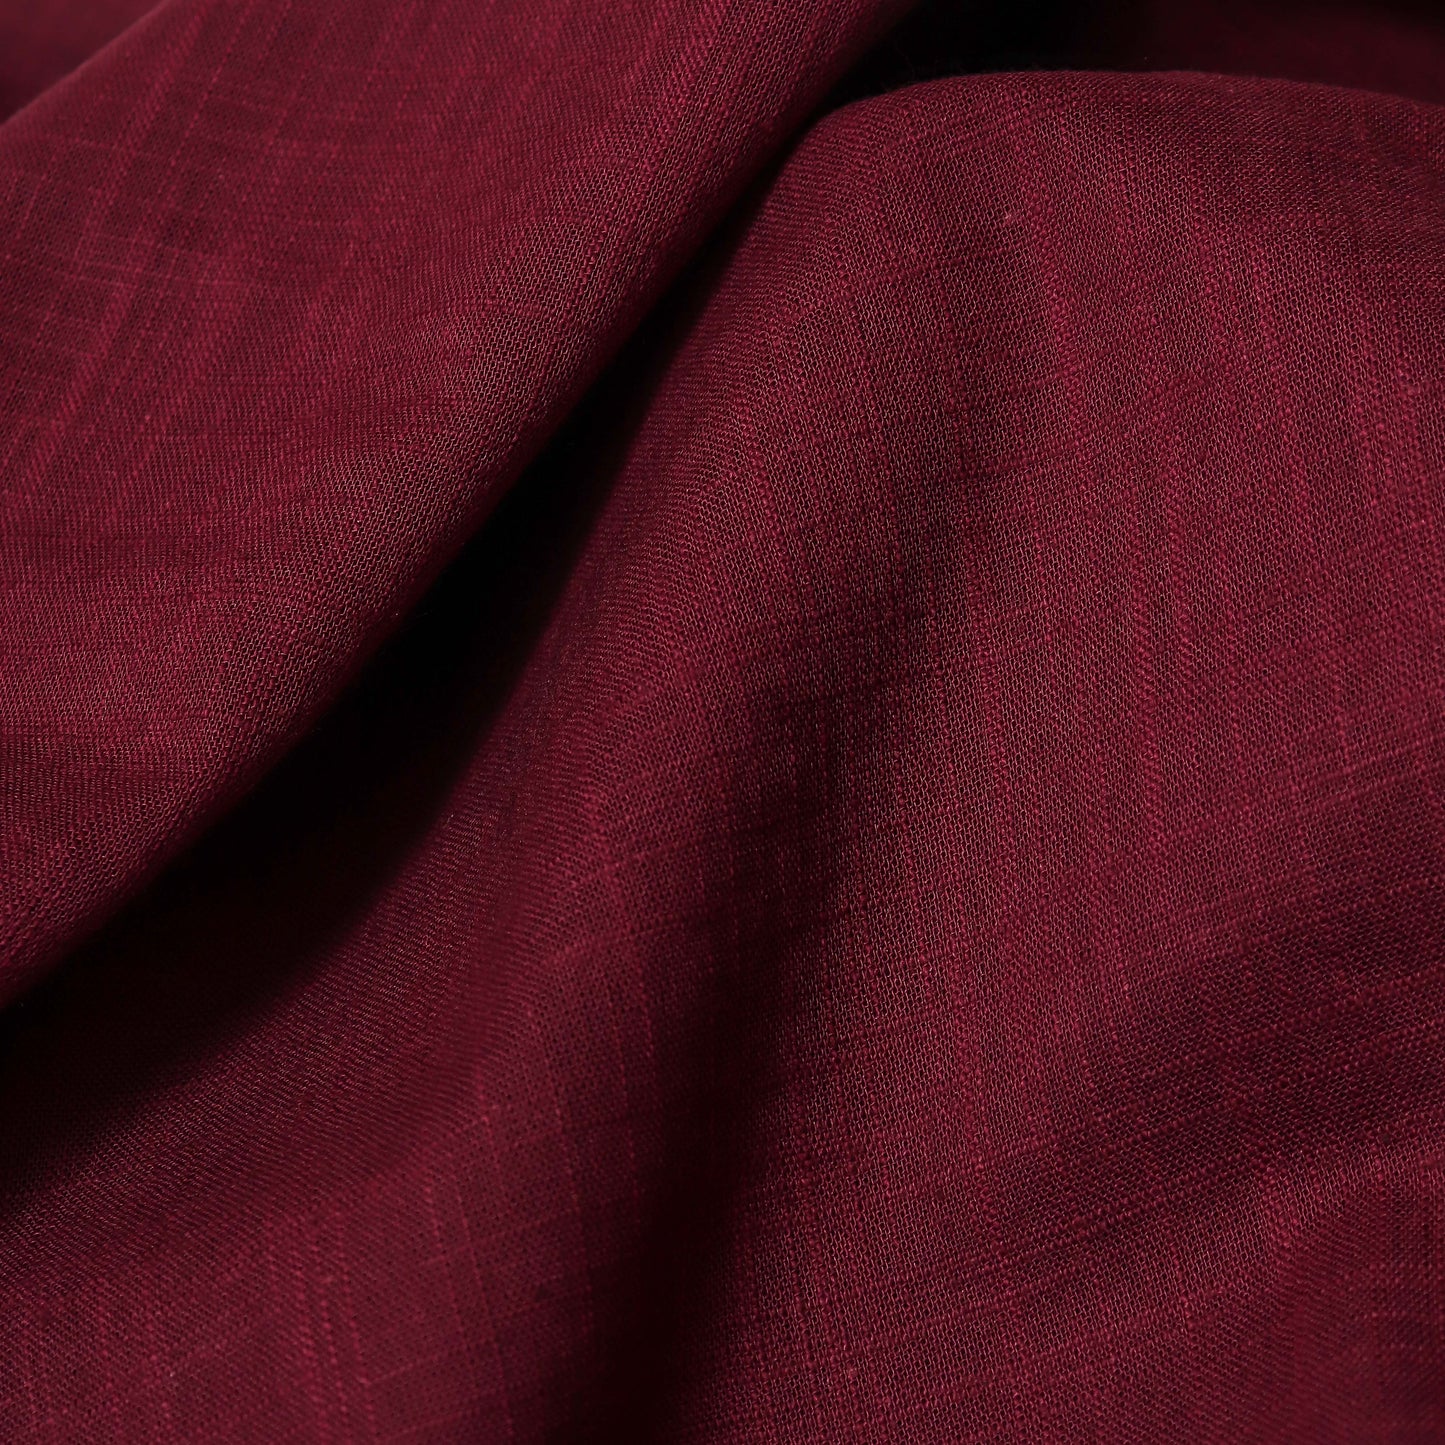 Cotton Slub Wine Kurta Fabric (2.5 Meters) | and Plain Dyed Pure Cotton Pyjama (2.5 Meters)